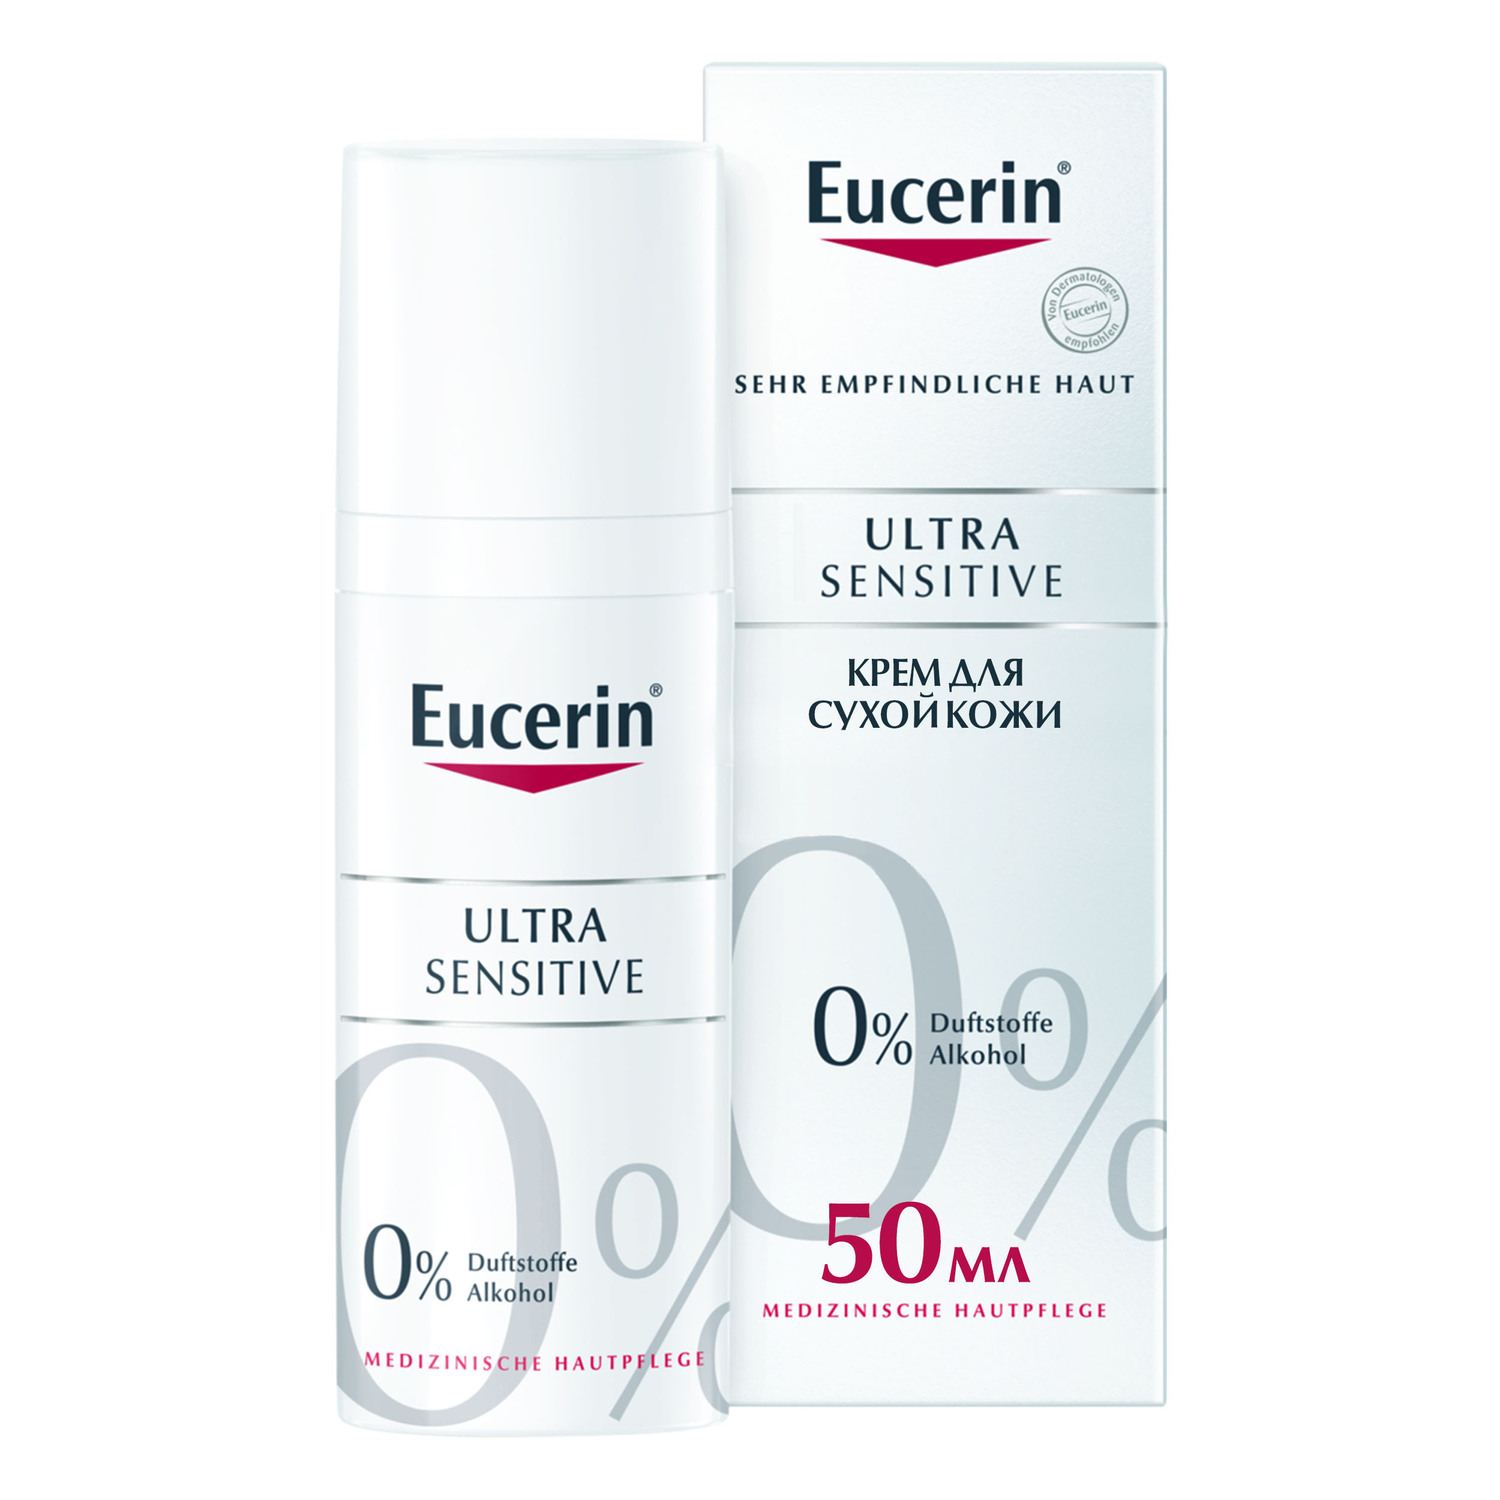 Eucerin Успокаивающий крем для чувствительной сухой кожи, 50 мл (Eucerin, UltraSensitive  AntiRedness)